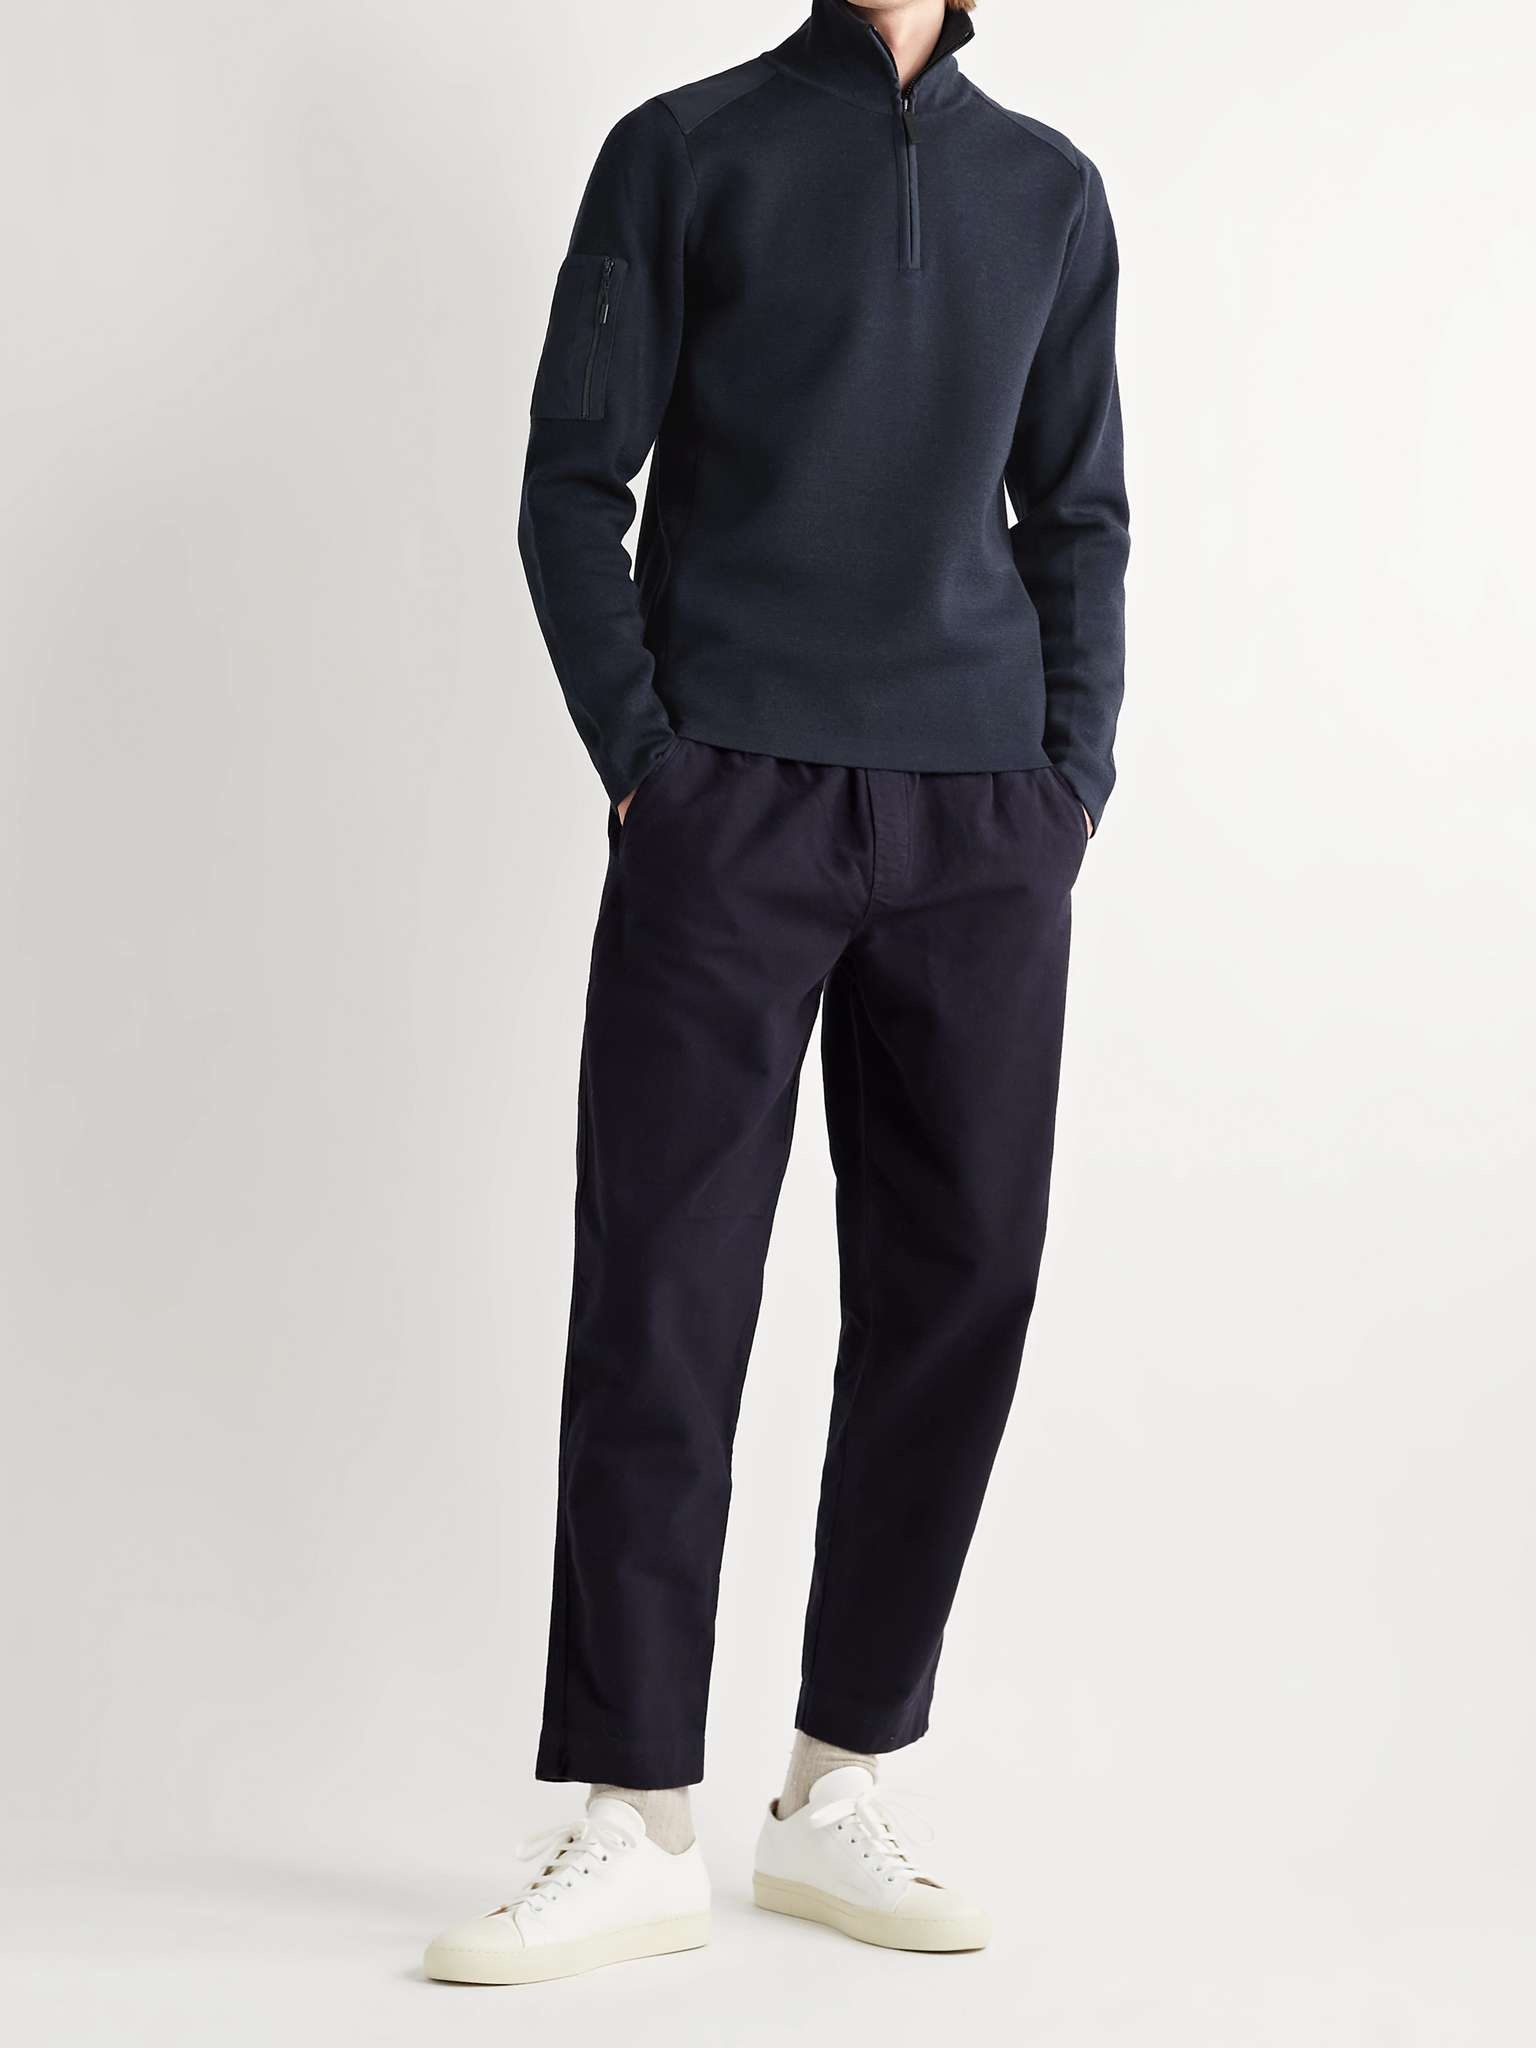 Stormont Slim-Fit CORDURA-Trimmed Merino Wool Half-Zip Sweater - 2